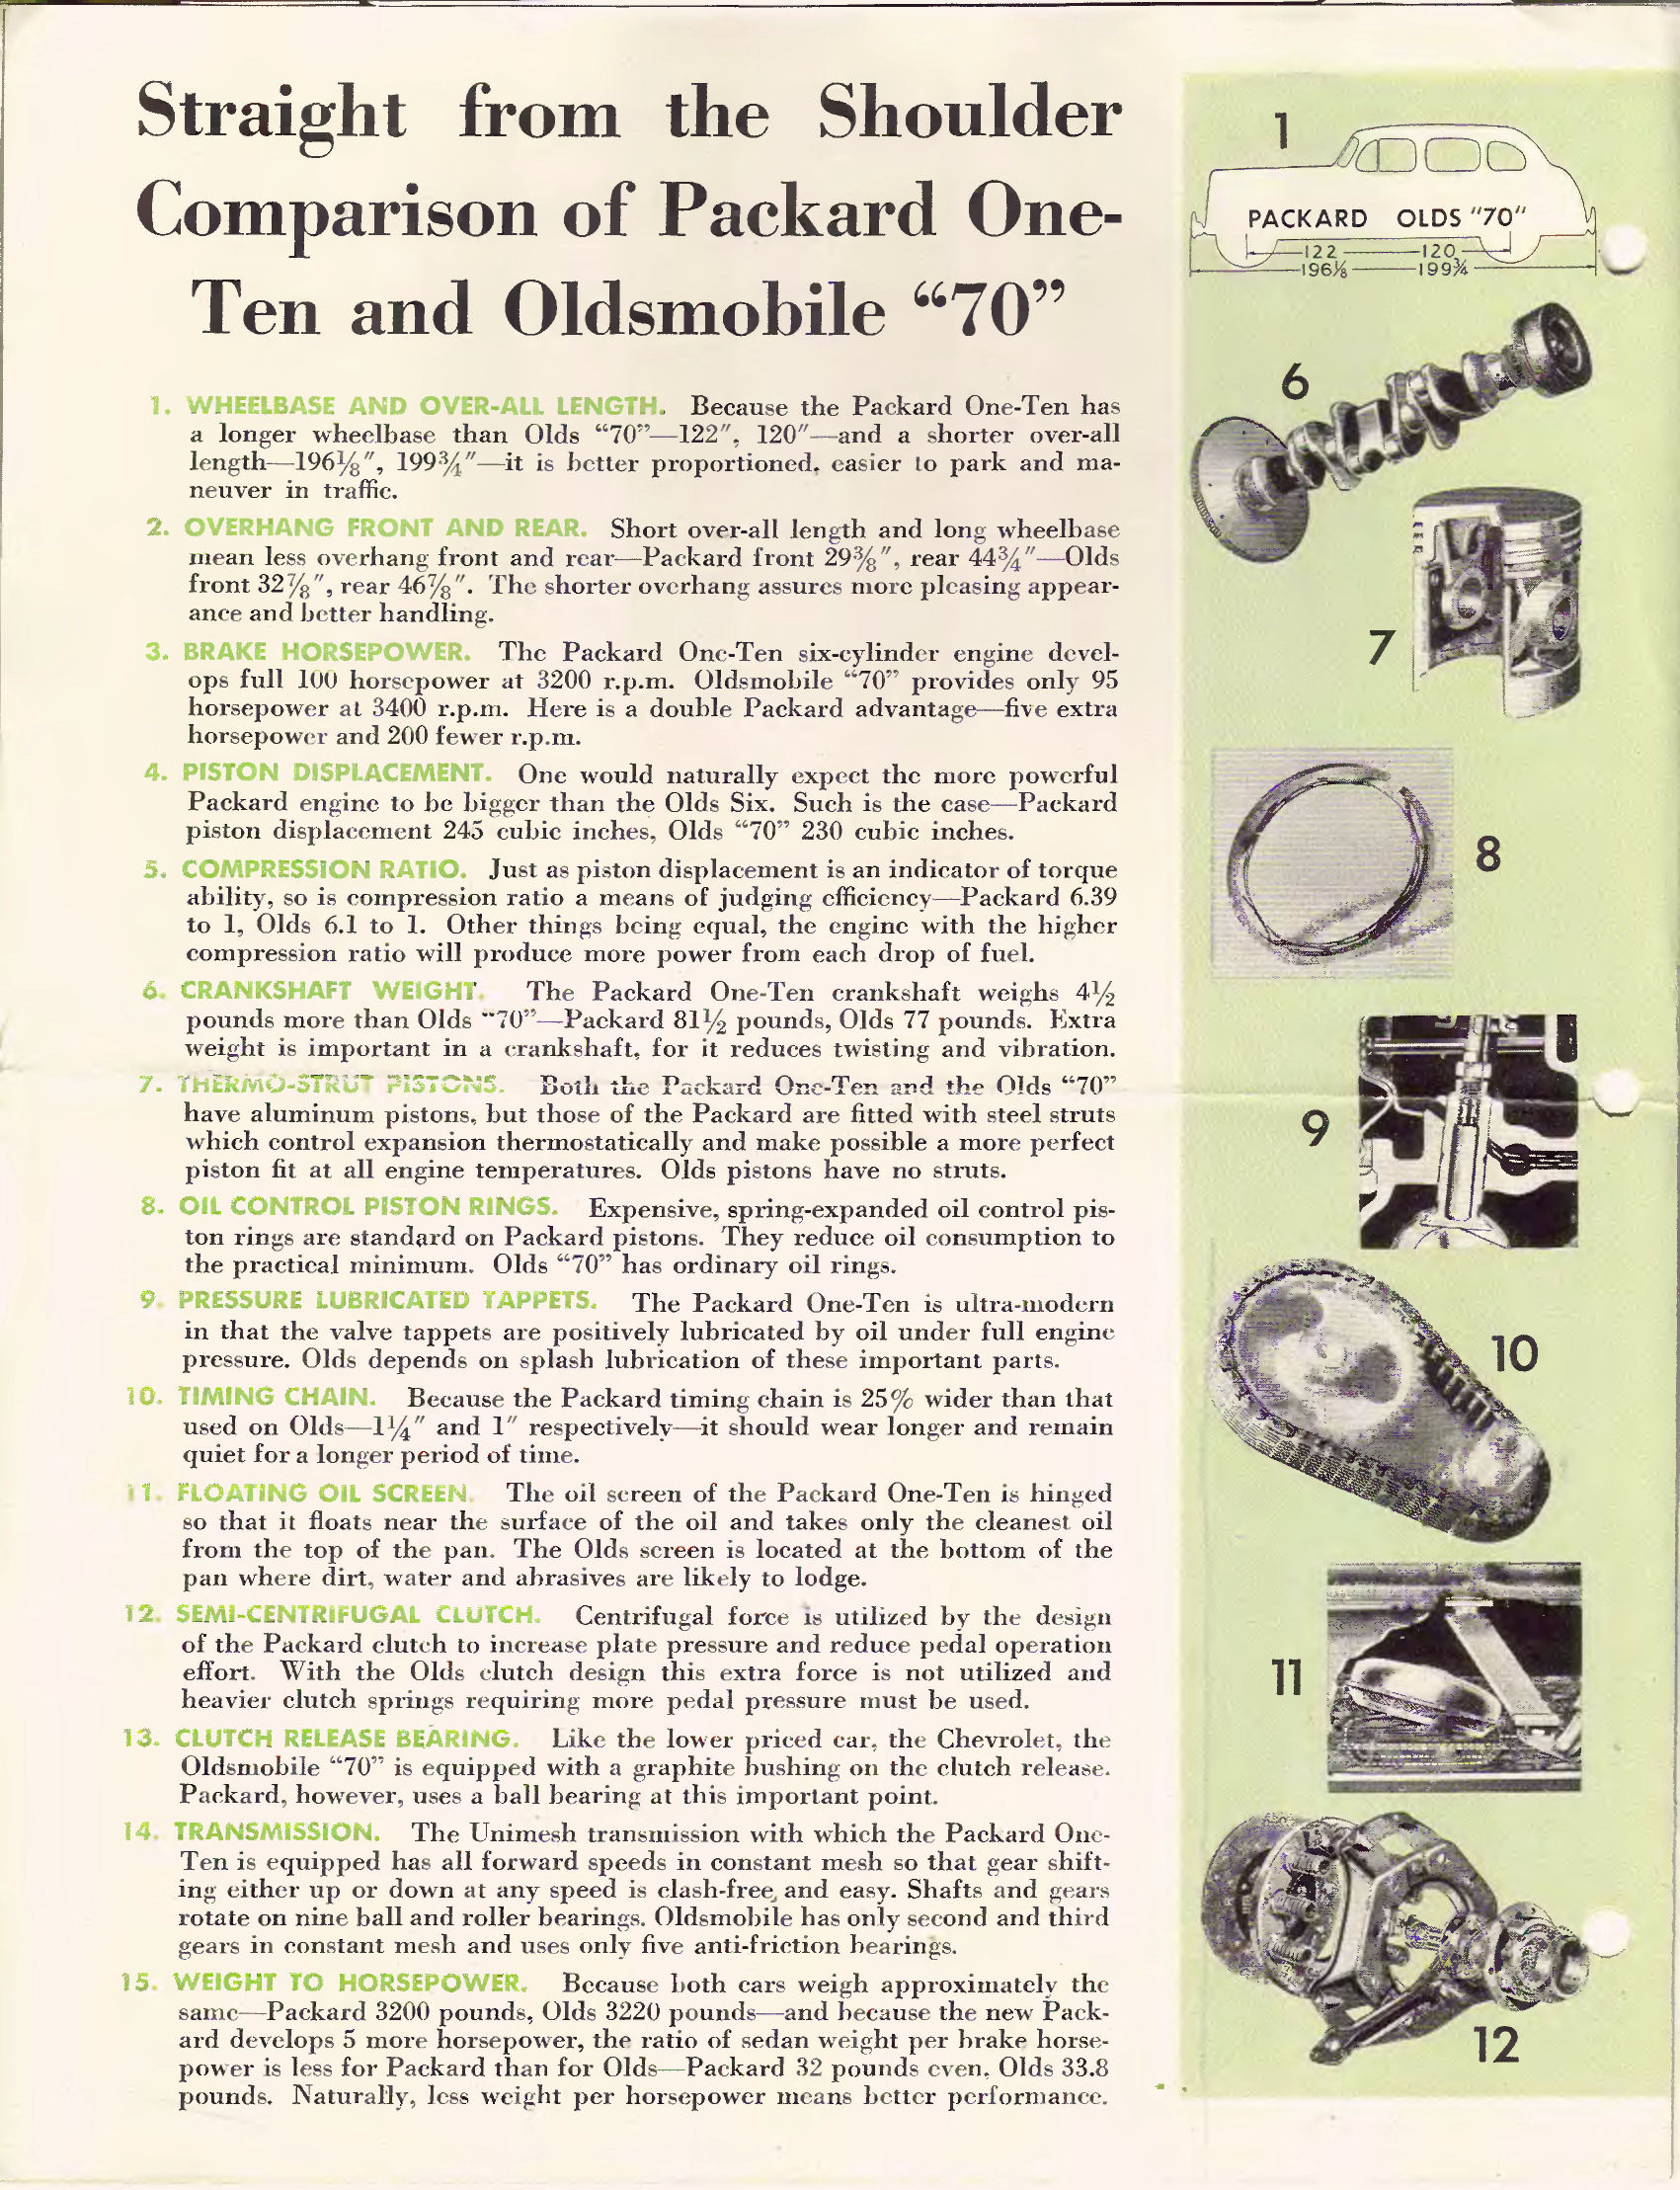 1940 Packard vs Oldsmobile Comparison Folder Page 2